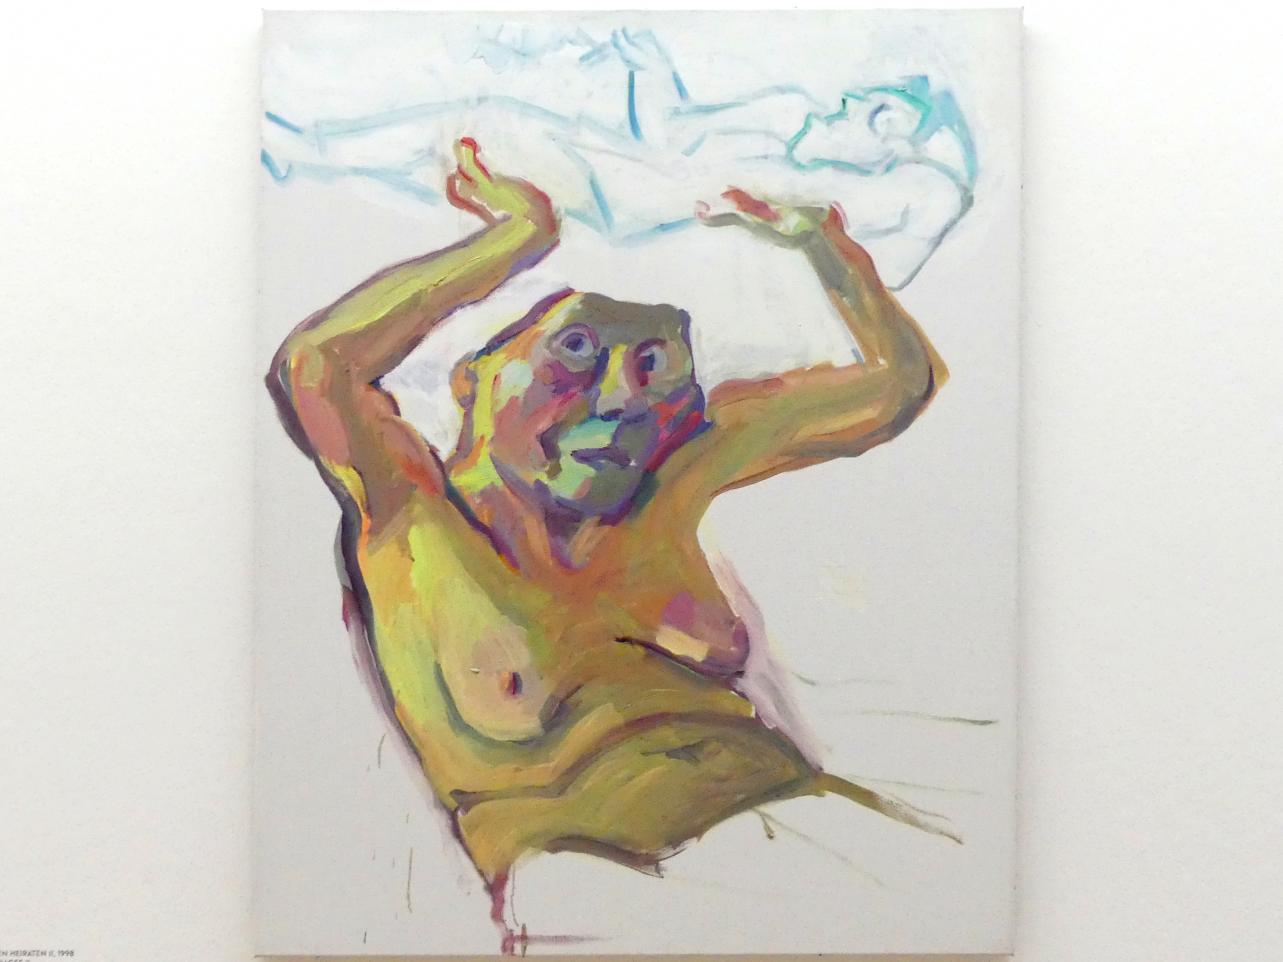 Maria Lassnig (1945–2011), Illusion von den versäumten Heiraten II, München, Lenbachhaus, Kunstbau, Ausstellung "BODY CHECK" vom 21.05.-15.09.2019, 1998